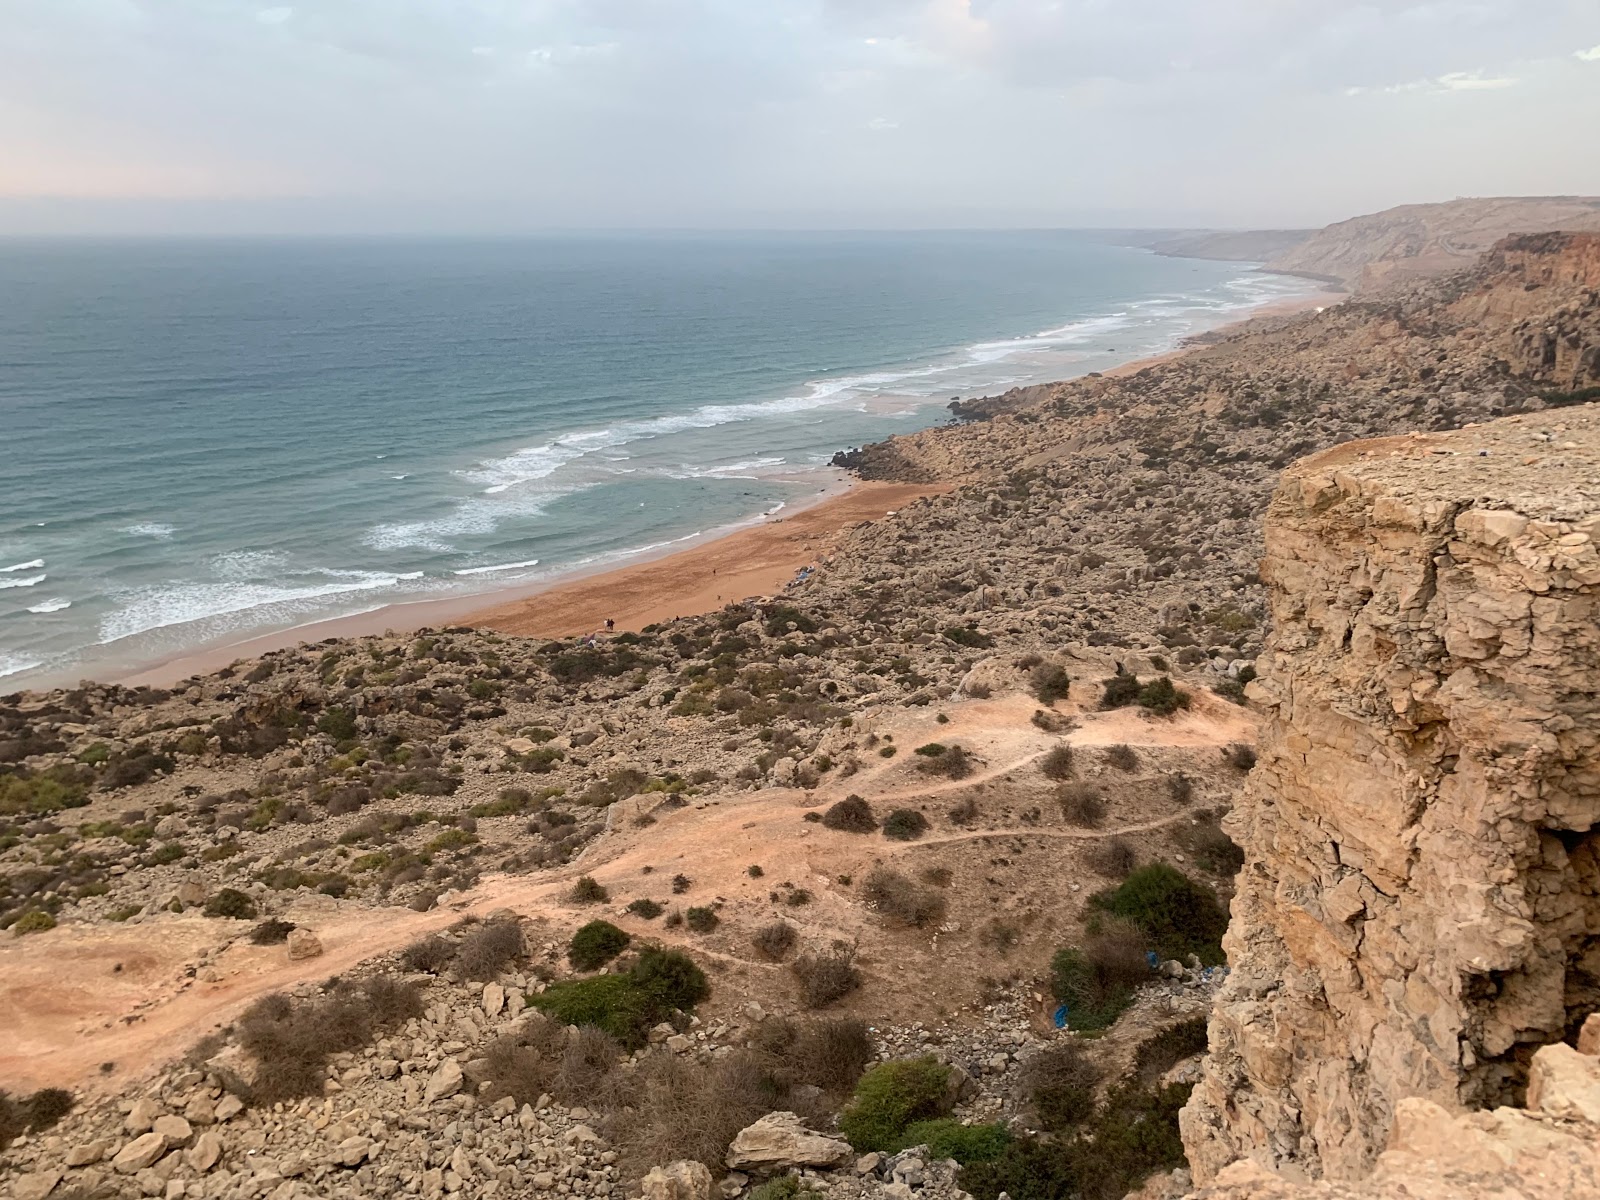 Valokuva Sidi Boudalaista. pinnalla kirkas hieno hiekka:n kanssa